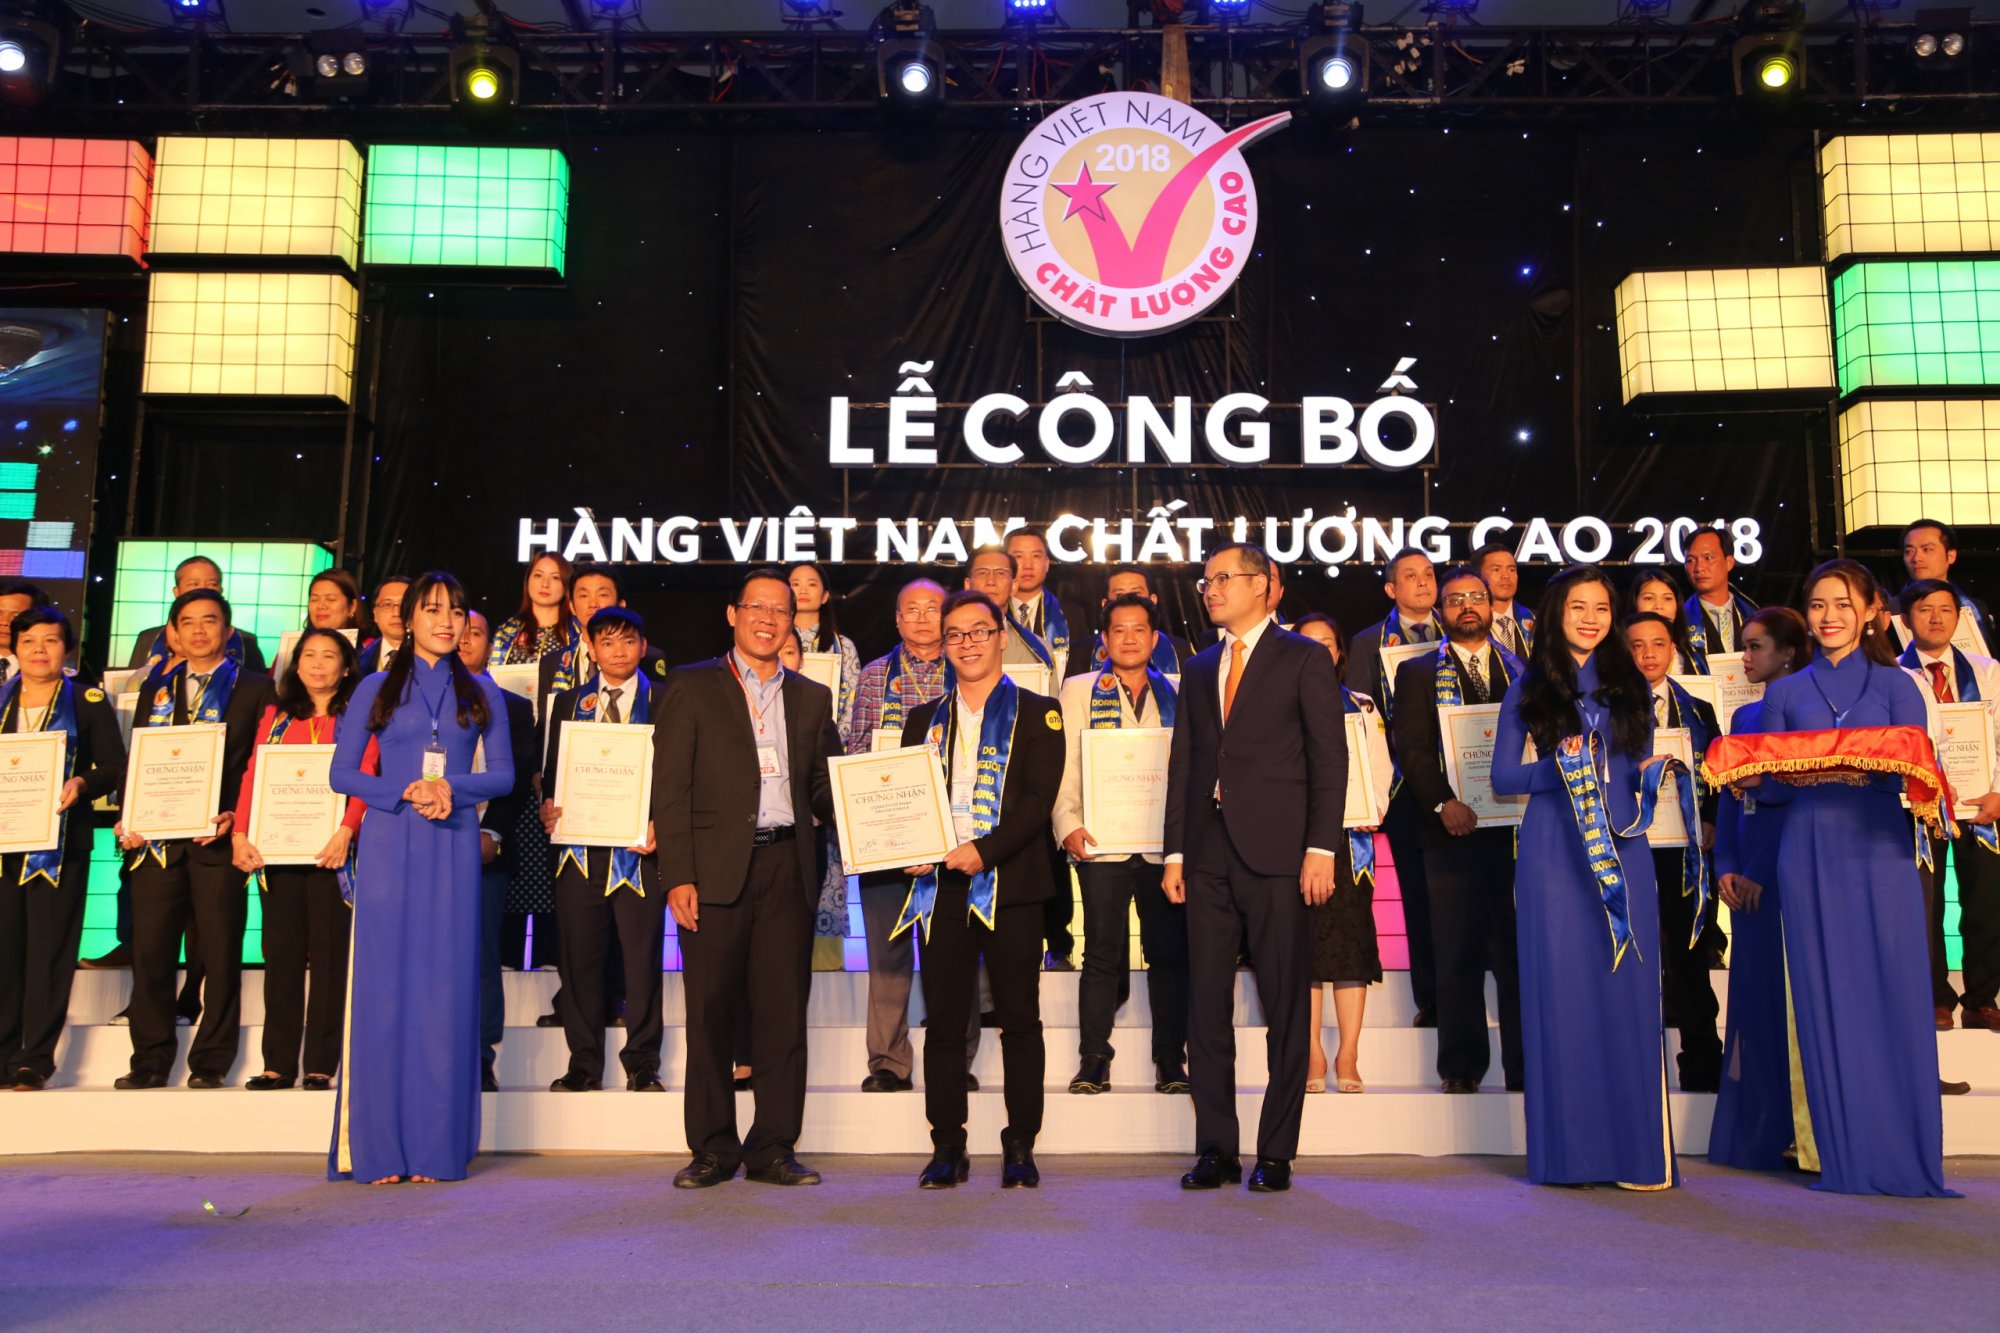 Dầu Ăn Cao Cấp Ranee đạt danh hiệu Hàng Việt Nam Chất Lượng Cao 2018, do người tiêu dùng bình chọn